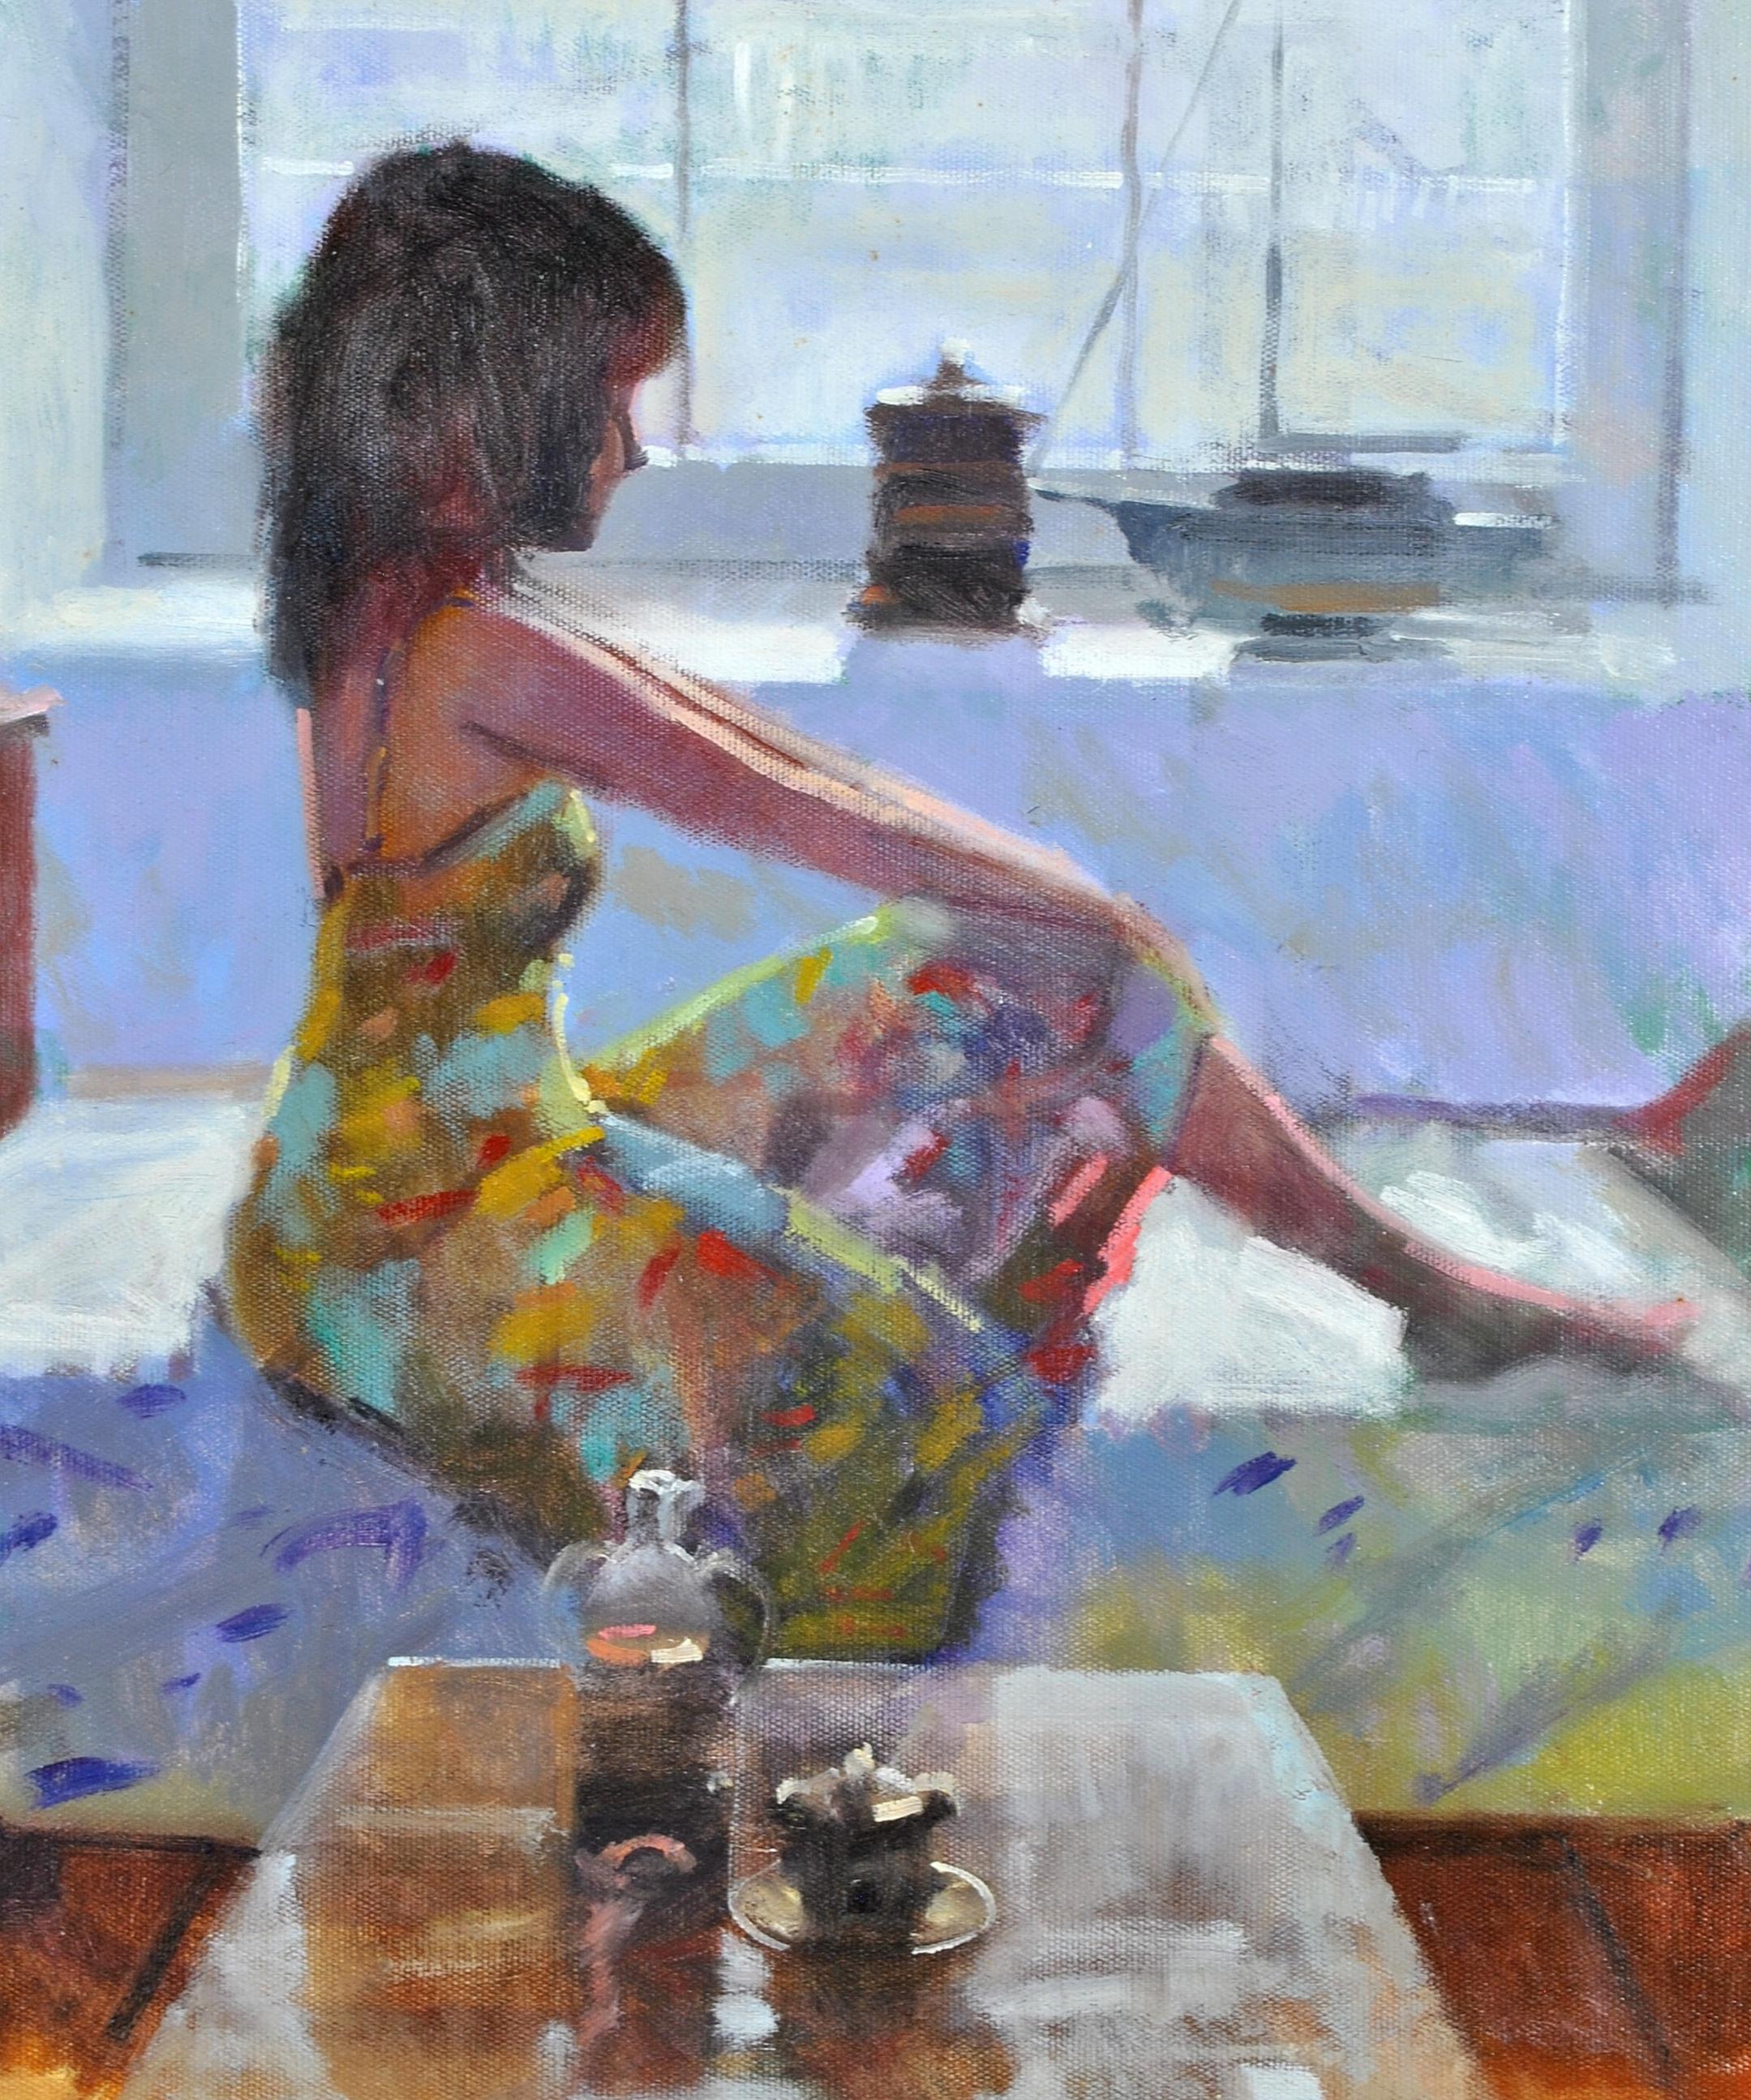 Un beau tableau impressionniste à l'huile sur toile de Zlatan Pilipovic représentant une jeune femme portant une robe légère sur une chaise longue devant une fenêtre à guillotine. L'œuvre est très bien peinte, avec une merveilleuse lumière diffuse